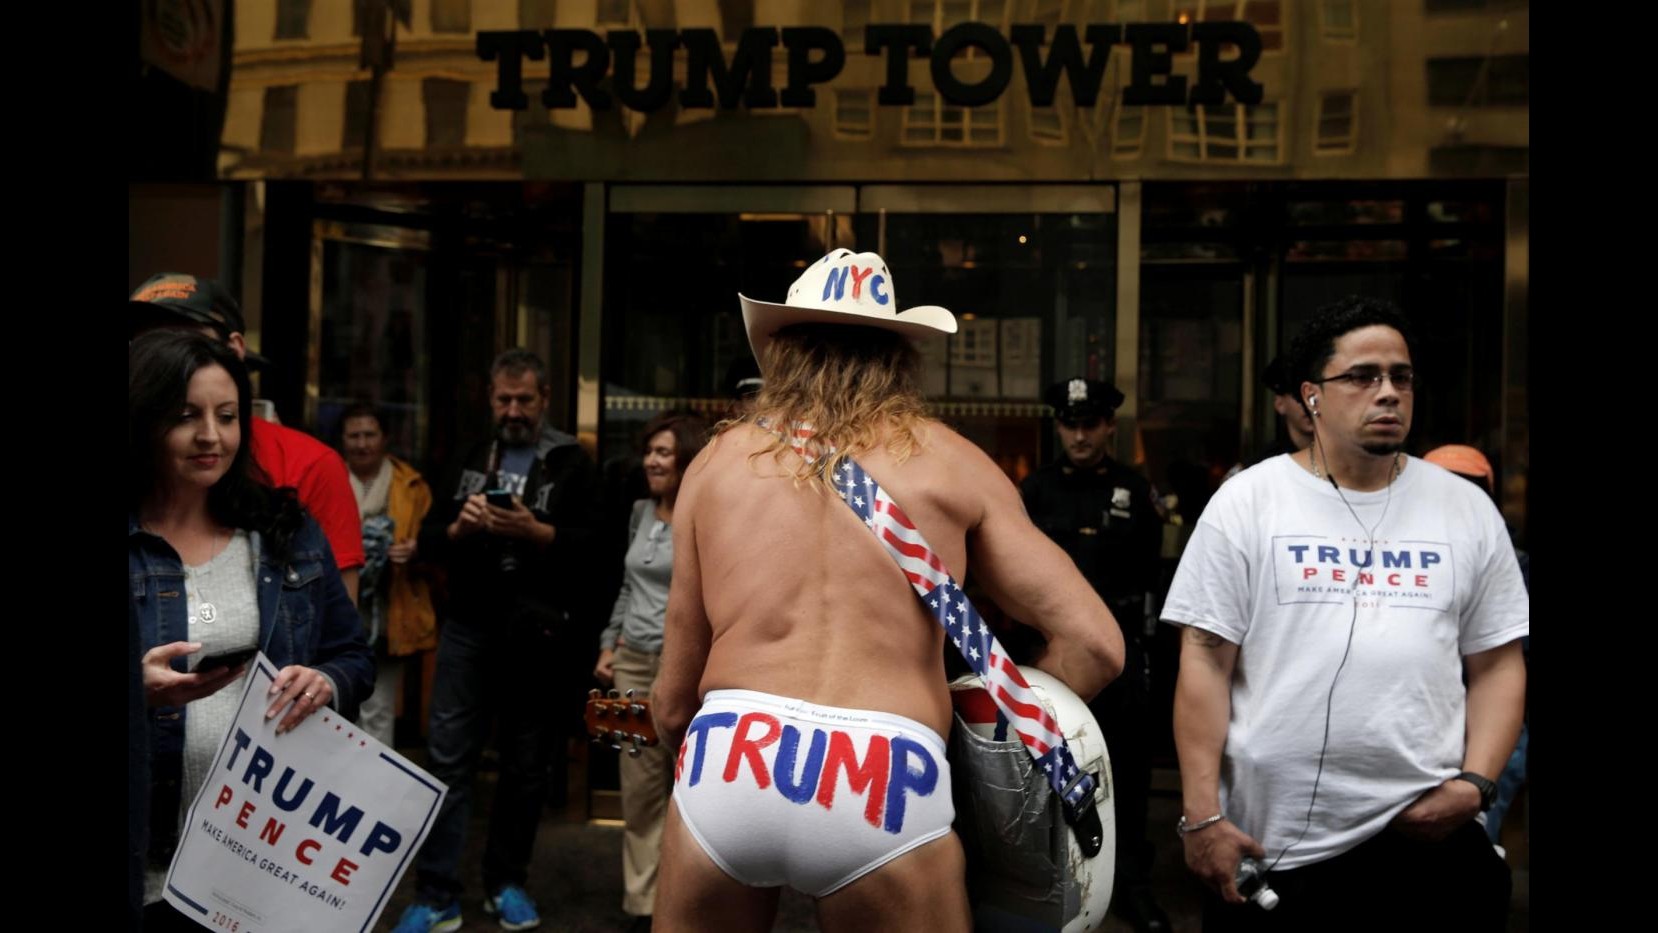 FOTO Folla sotto la Trump Tower: ‘uomini pene’ e slip pro magnate